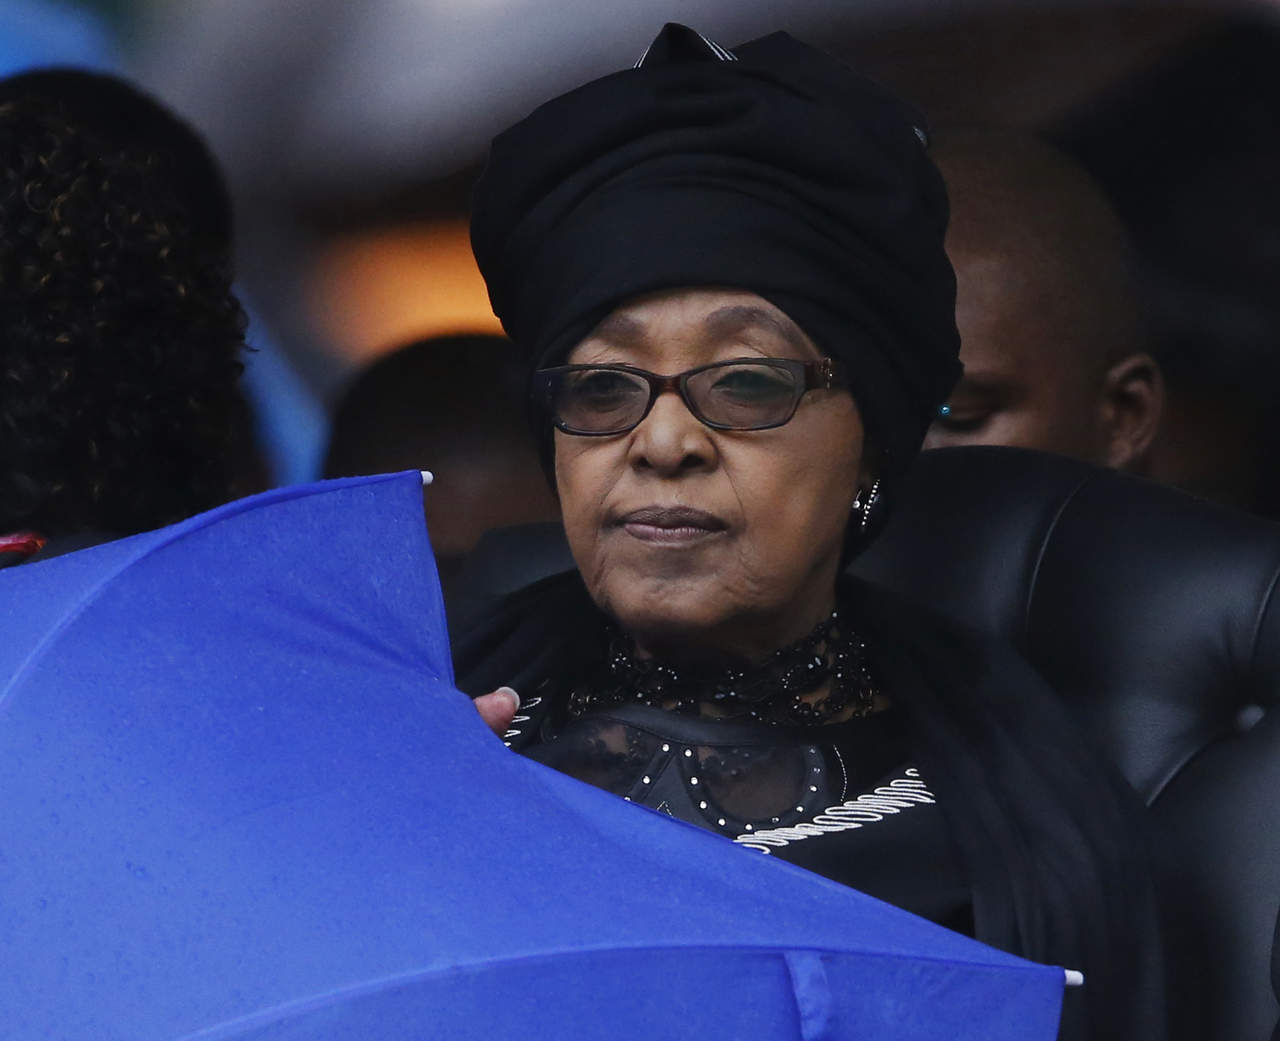 La política y activista Winnie Madikizela-Mandela, segunda esposa del expresidente sudafricano Nelson Mandela, falleció hoy a los 81 años, según confirmó su familia. (EFE)